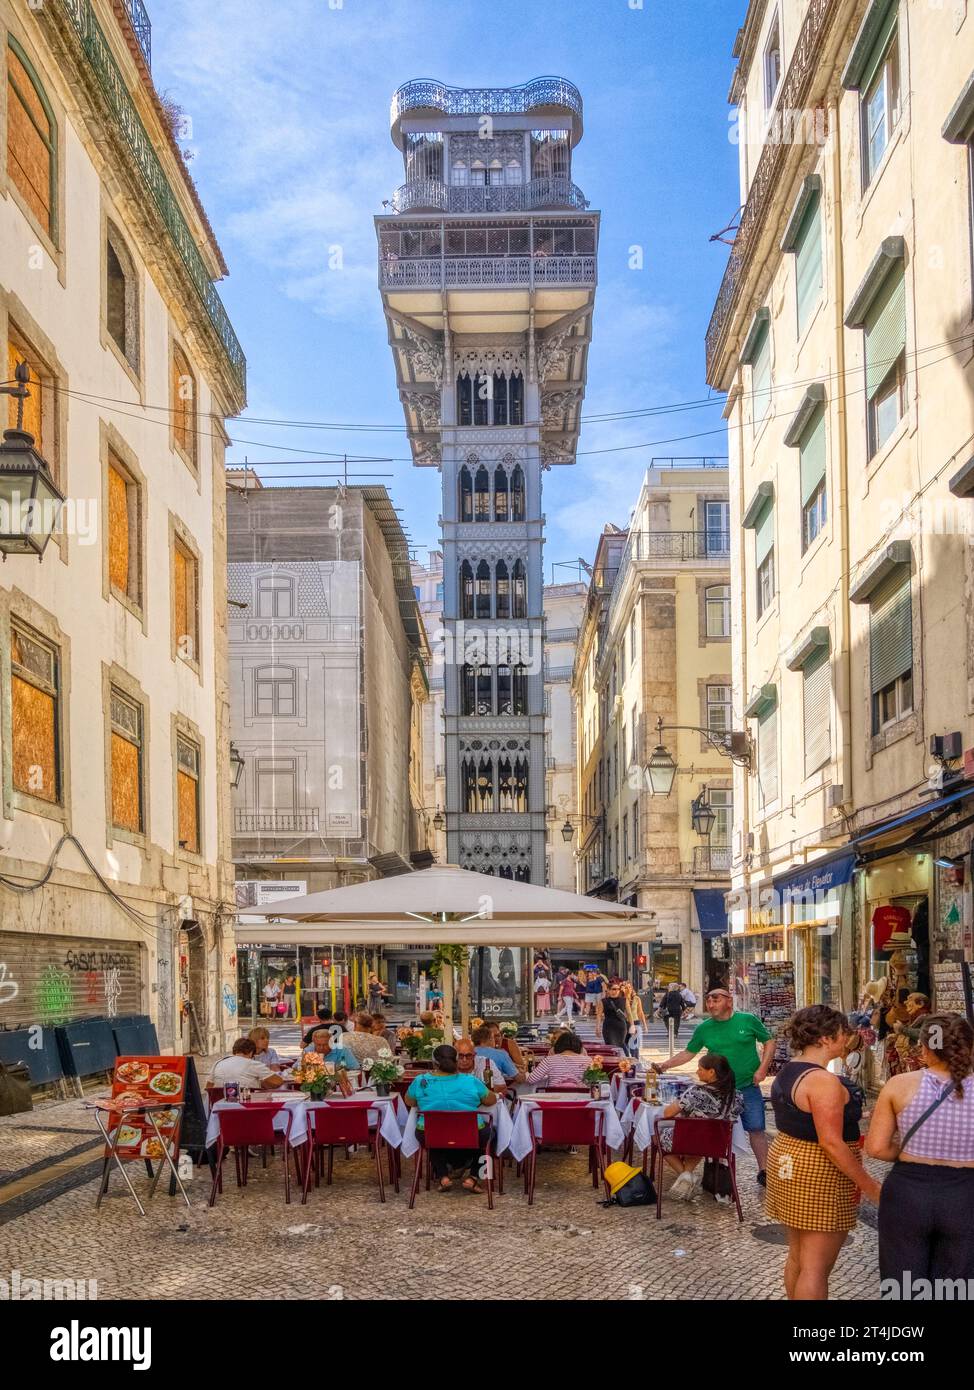 The Elevador de Santa Justa in the Baixa central neighborhood of Lisbon Portugal Stock Photo